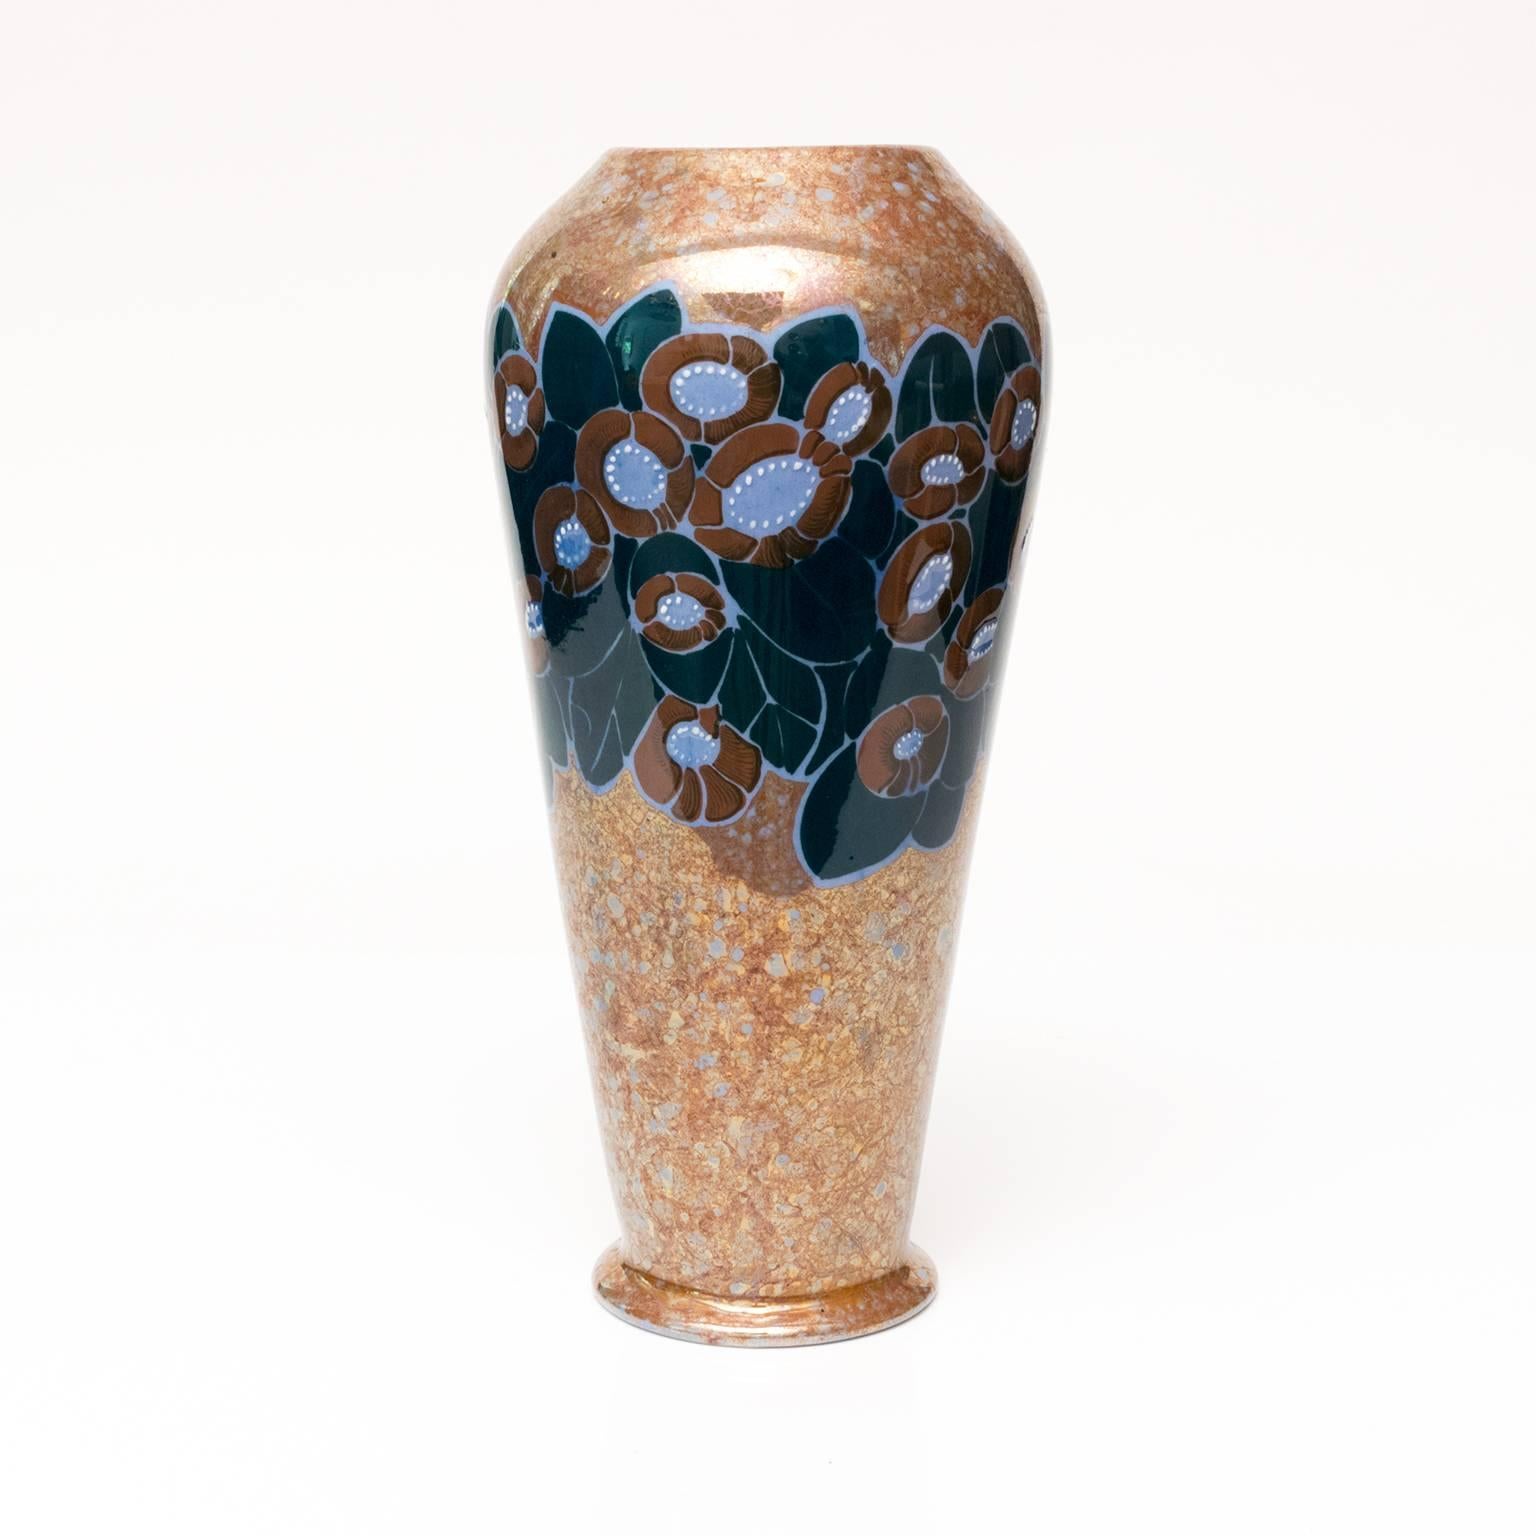 Große, moderne, skandinavische Vase aus glasierter Keramik mit Blumenmotiv auf marmoriertem Grund. Hergestellt von Arabia Oy, Helsinki, Finnland. Entworfen von Thure Öberg, signiert am Boden 